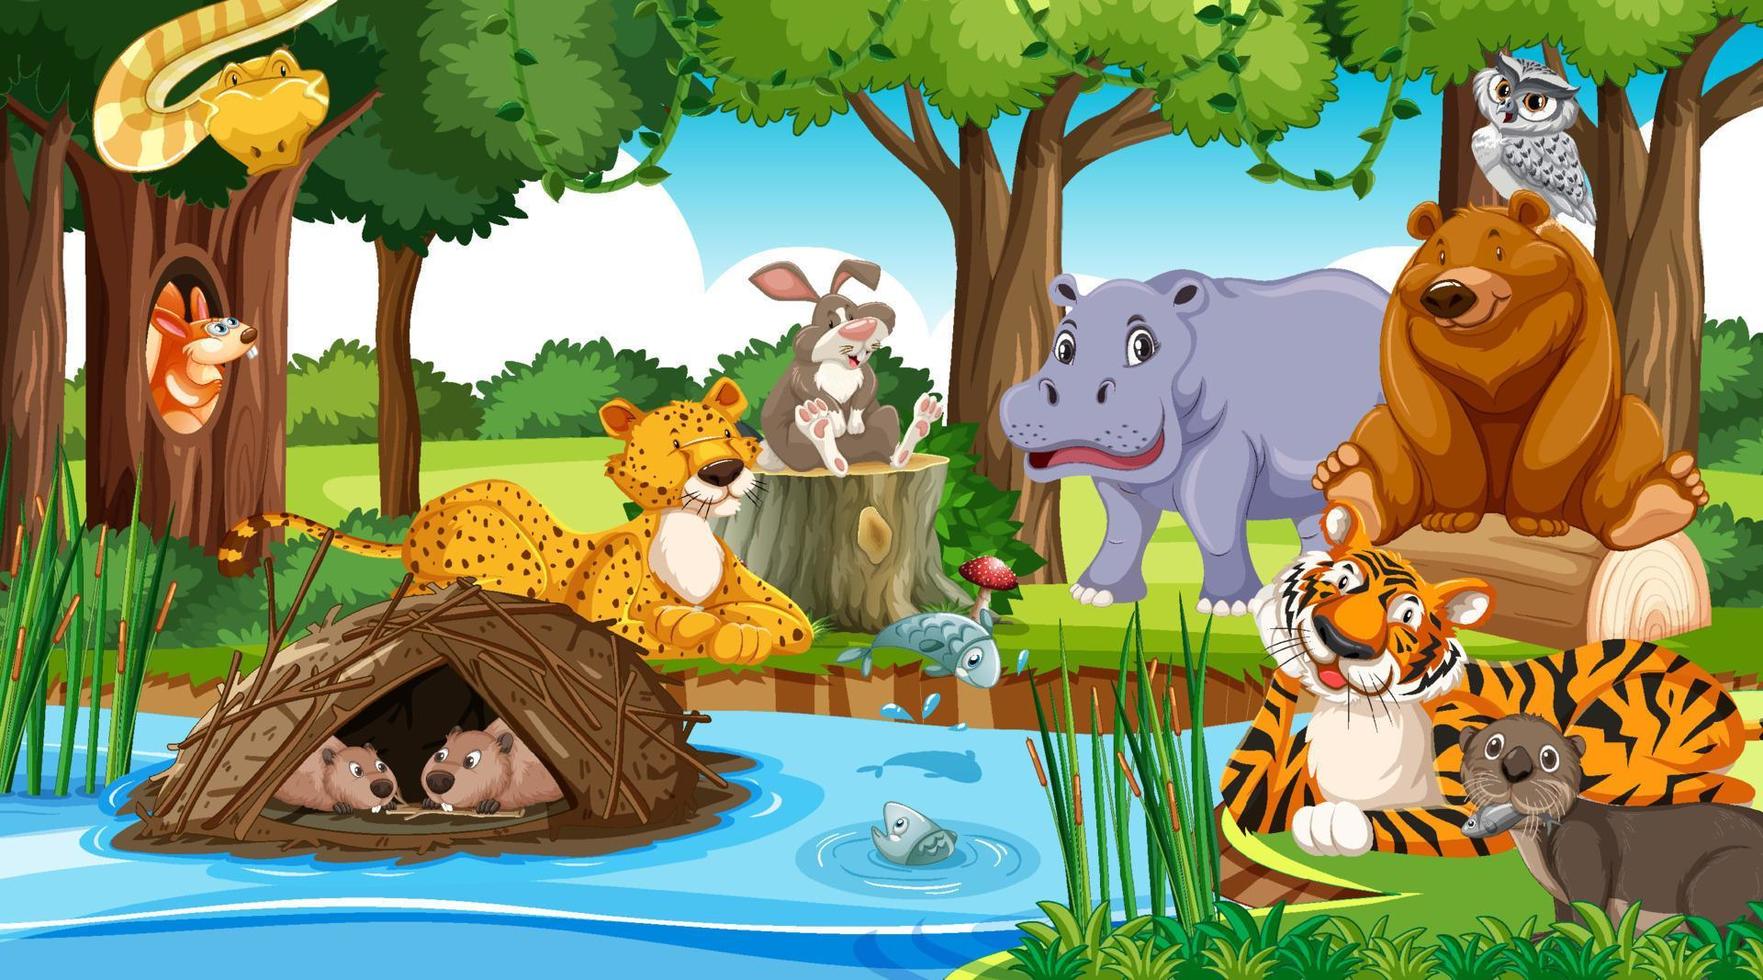 personaggi dei cartoni animati di animali selvatici nella scena della foresta vettore